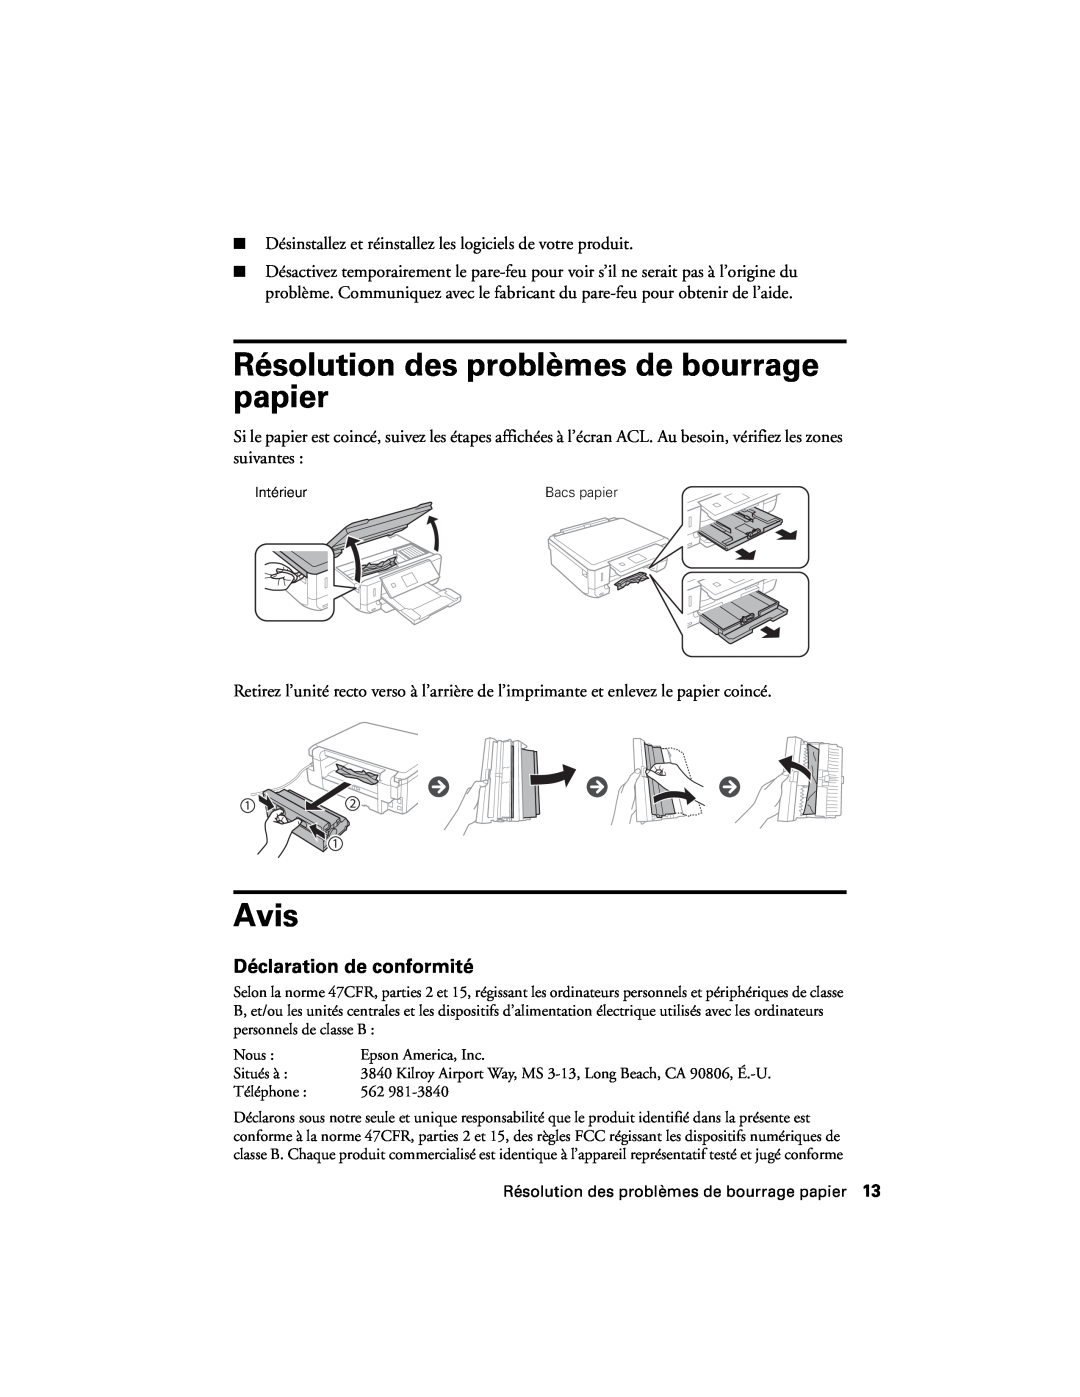 Epson XP-620 manual Résolution des problèmes de bourrage papier, Avis, Déclaration de conformité 